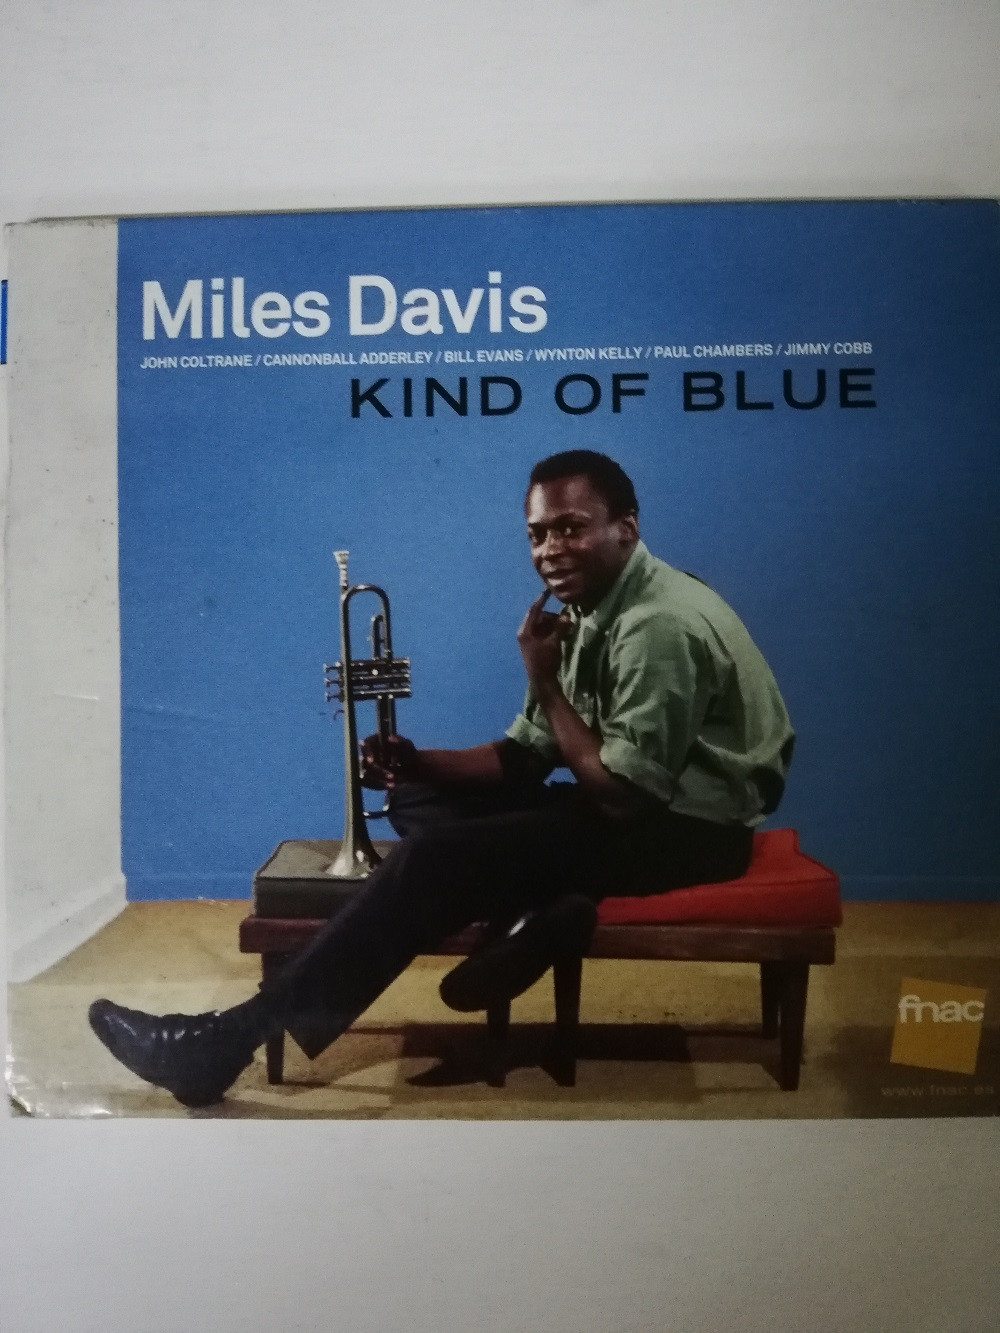 Imagen CD MILES DAVIS - KIND OF BLUE